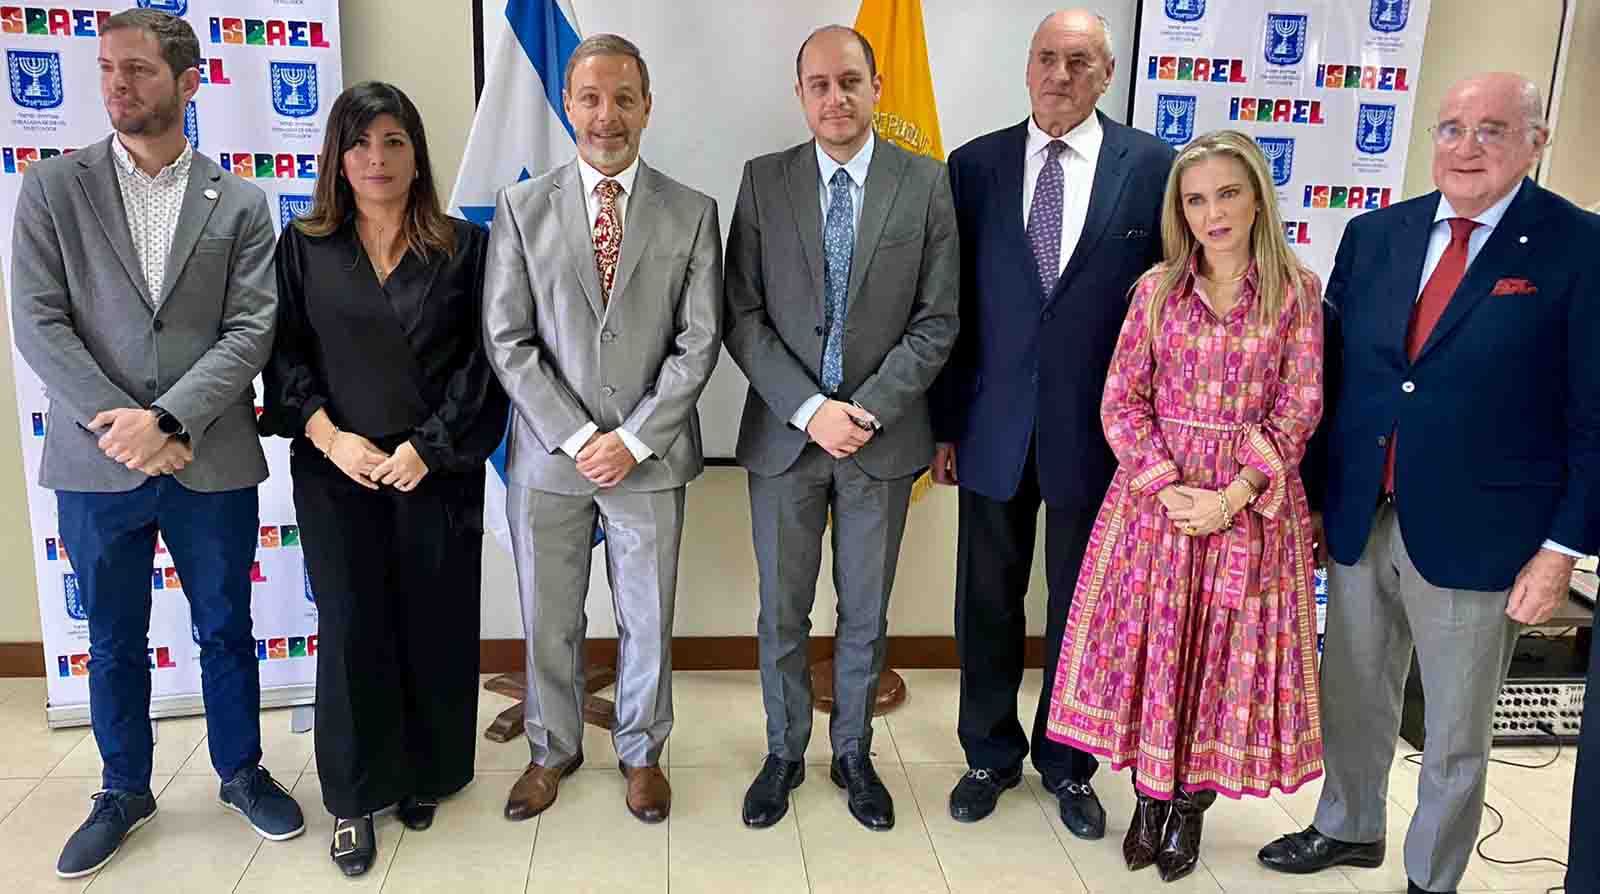 Un grupo de empresarios ecuatorianos particparon de un encuentro con representantes del Gobierno de Israel para conocer de oportunidades y posibilidades de alianzas comerciales. Foto: Cortesía.